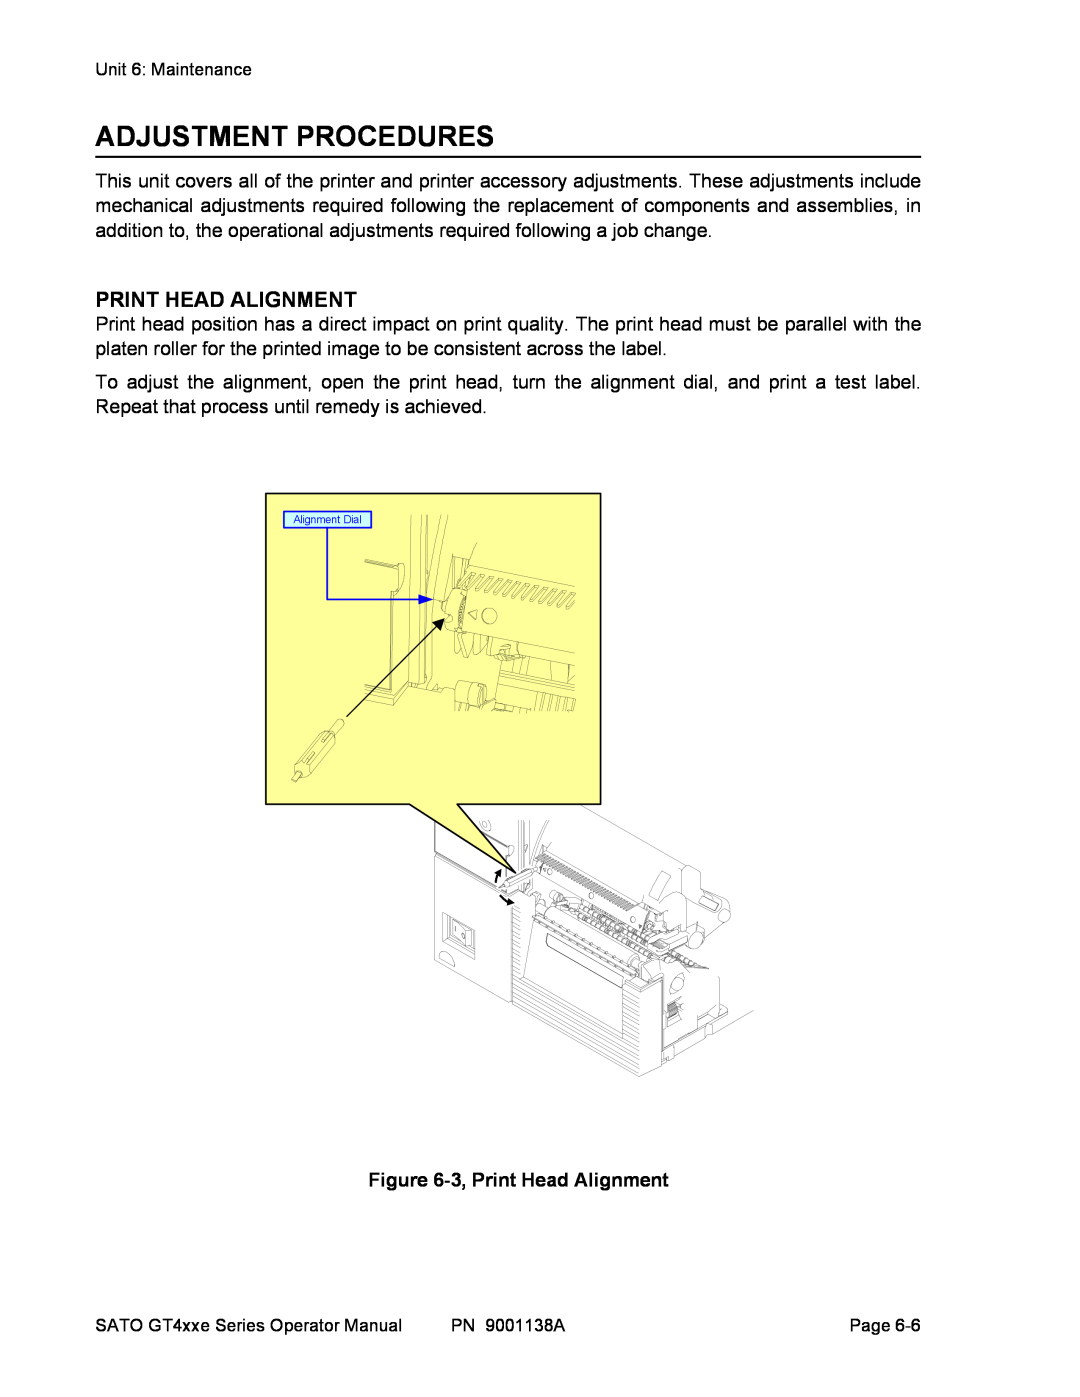 SATO GT408, GT 424e, GT 410 manual Adjustment Procedures, 3, Print Head Alignment 